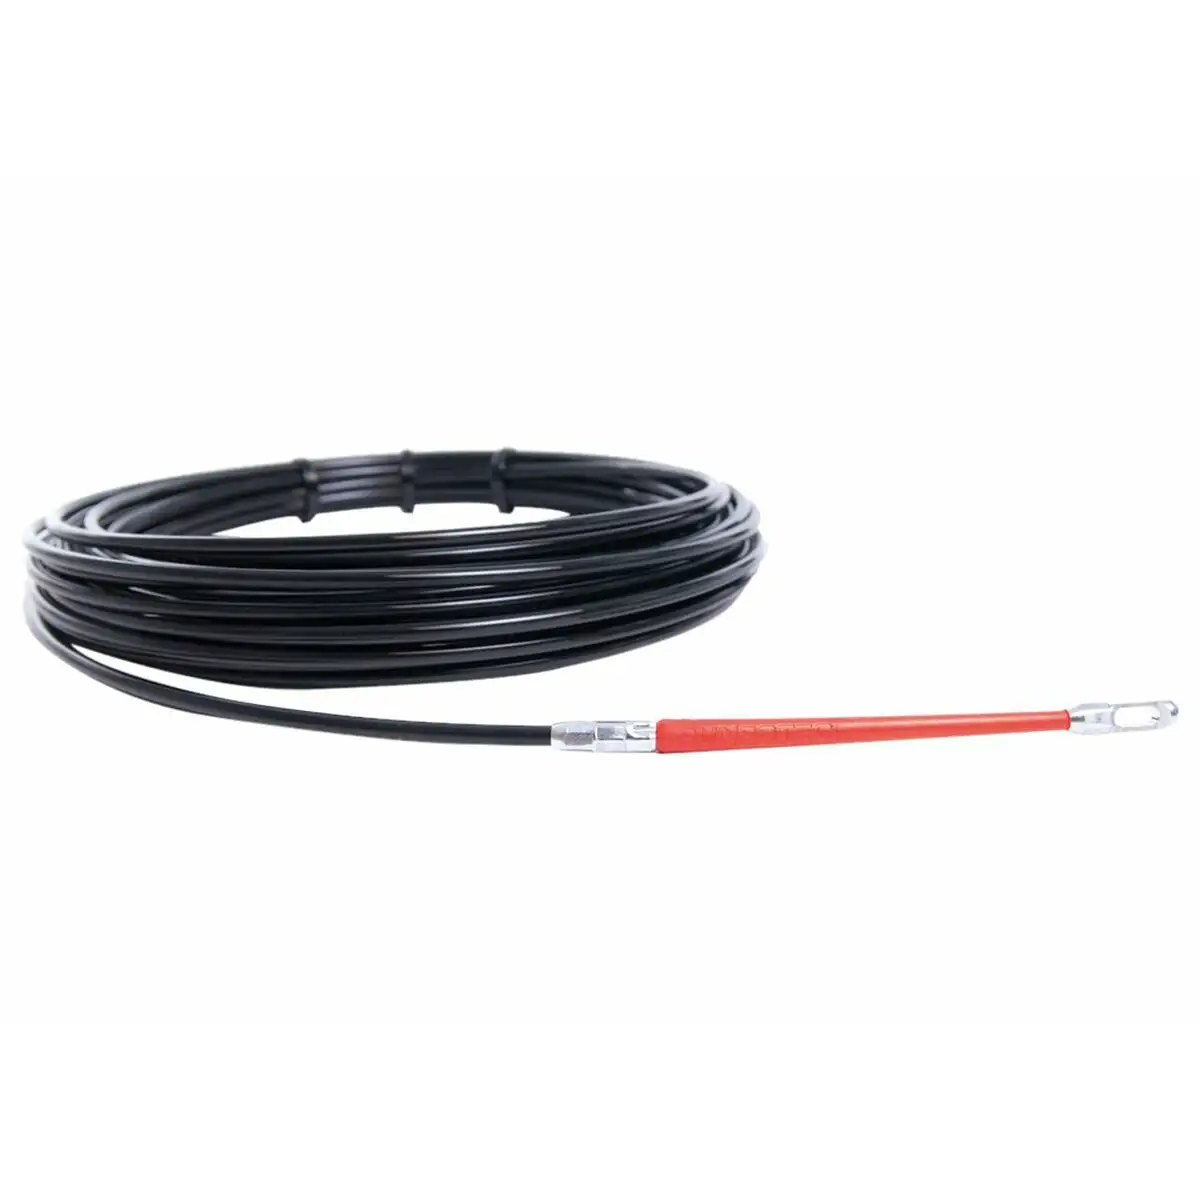 Ramasse cable noir 20 m nylon guide reconditionne b _4550. Bienvenue chez DIAYTAR SENEGAL - Où Choisir est un Voyage. Plongez dans notre plateforme en ligne pour trouver des produits qui ajoutent de la couleur et de la texture à votre quotidien.